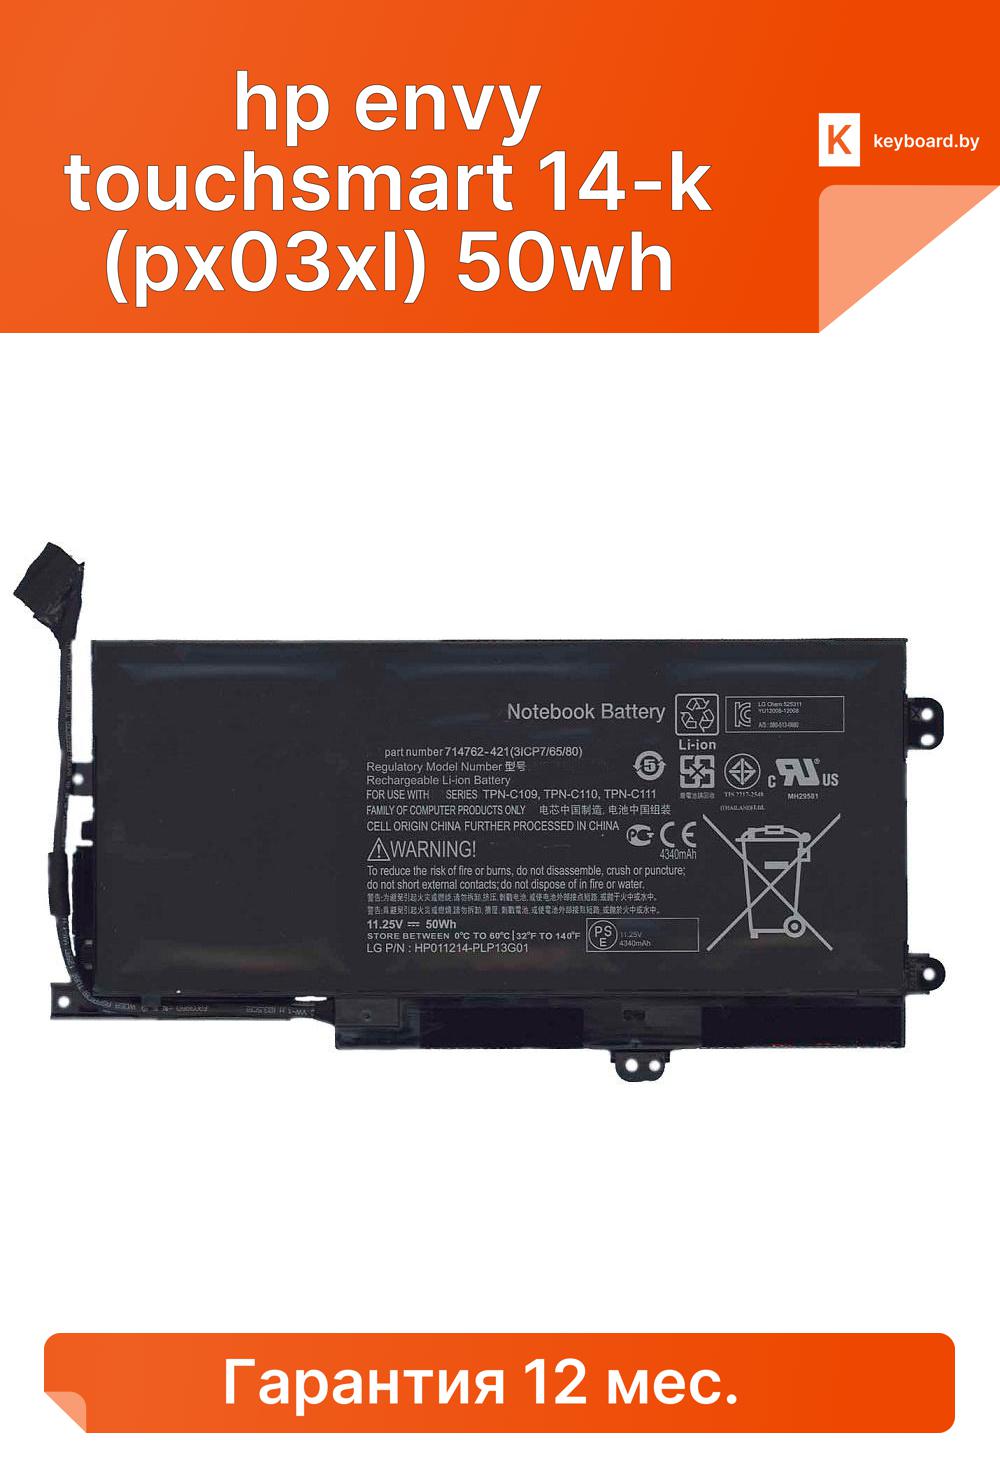 Аккумуляторная батарея для ноутбука hp envy touchsmart 14-k (px03xl) 50wh